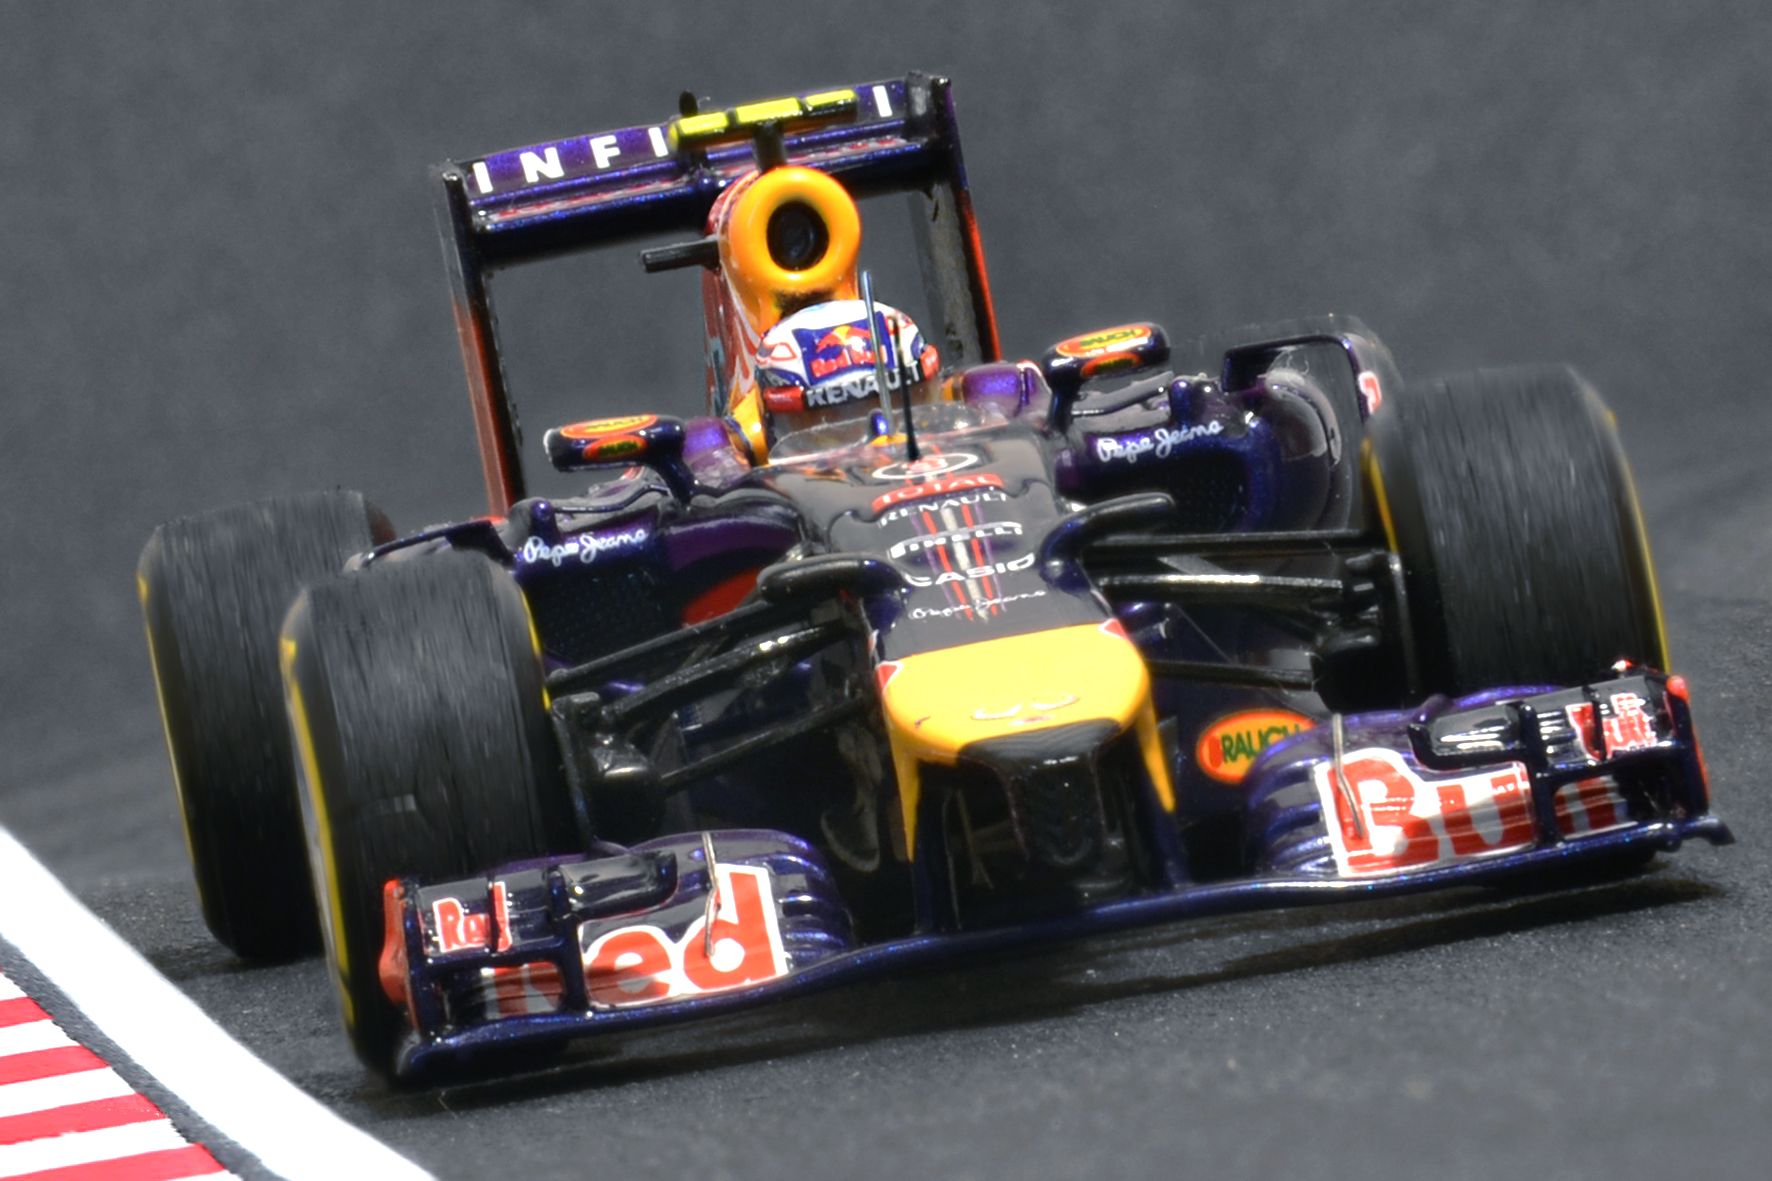 Red Bull RB10 Daniel Ricciardo - Spark 1:43